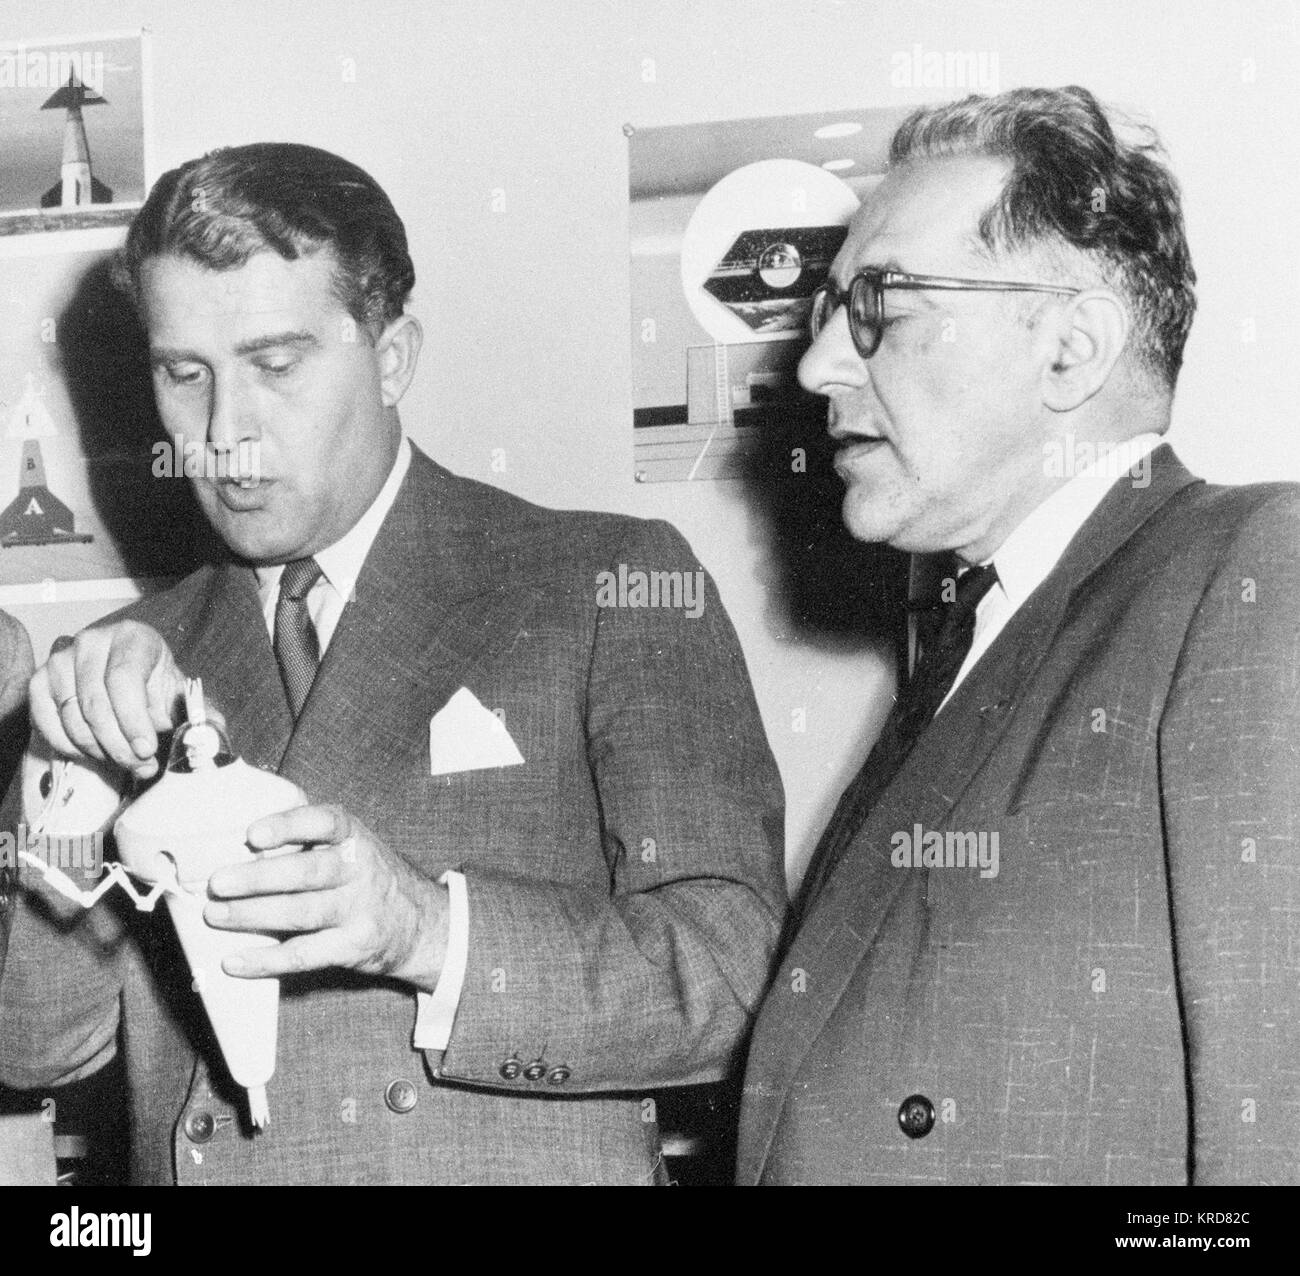 L R: HALSER, Heinz - DR.; VON BRAUN; Ley, WILLEY BEI DISNEY STUDIOS MIT FLASCHE ANZUG KONZEPT VON VON BRAUN. Wernher von Braun Willy Ley (1954) Stockfoto